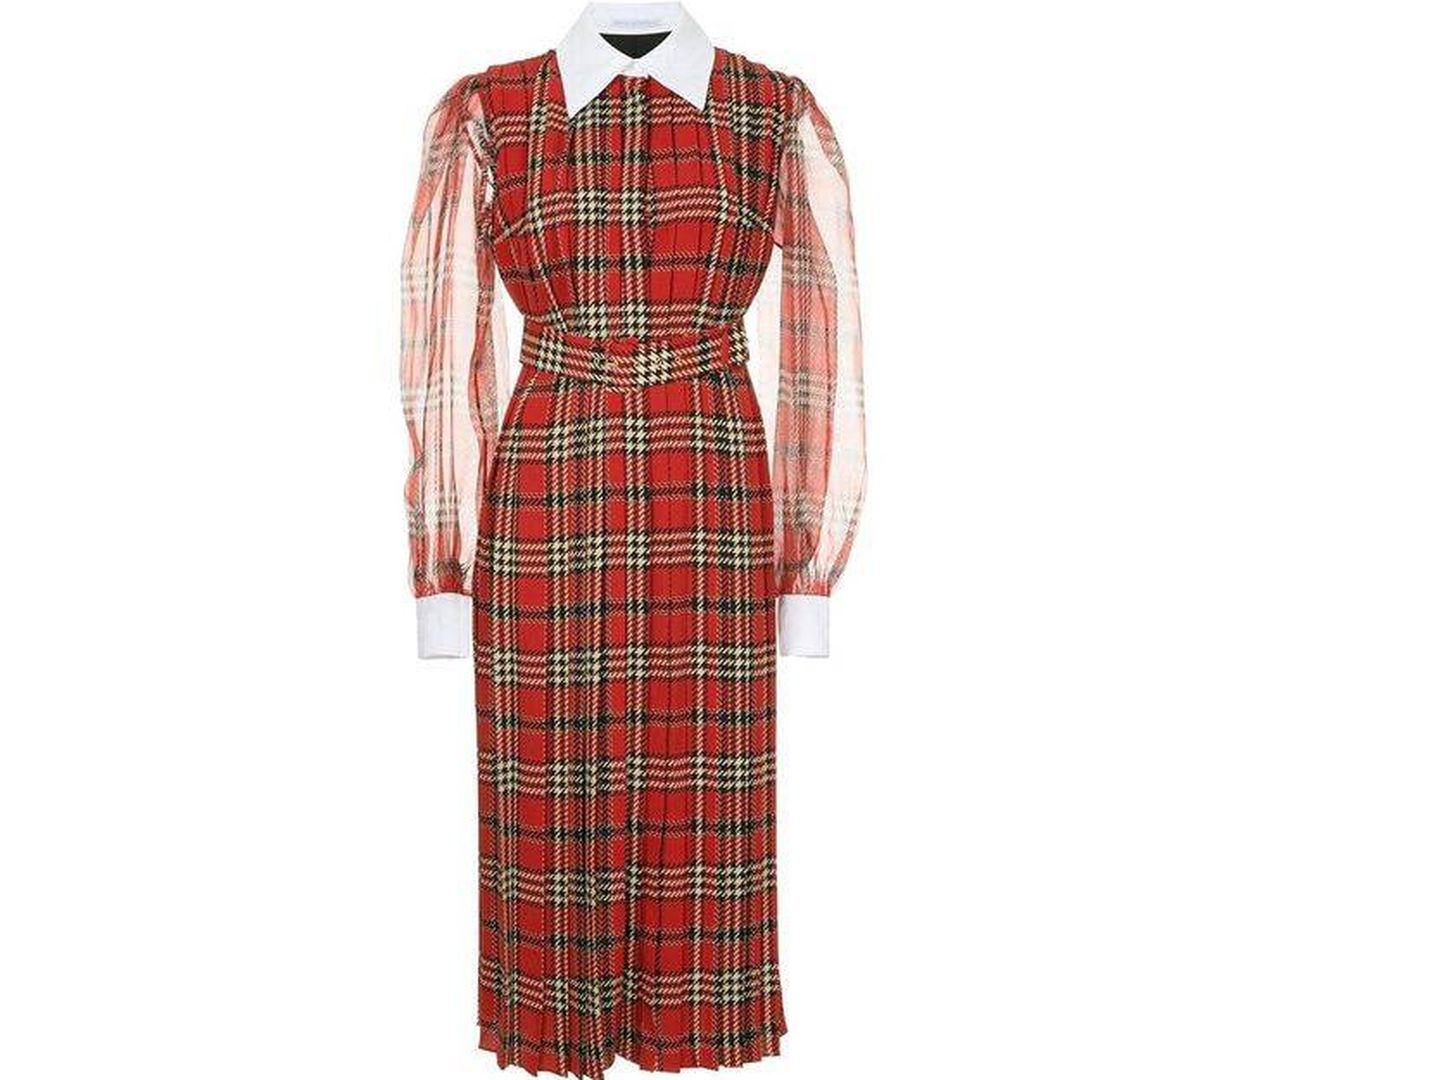 Este es el vestido que ha lucido la duquesa de Cambridge, disponible en distintas tiendas online.